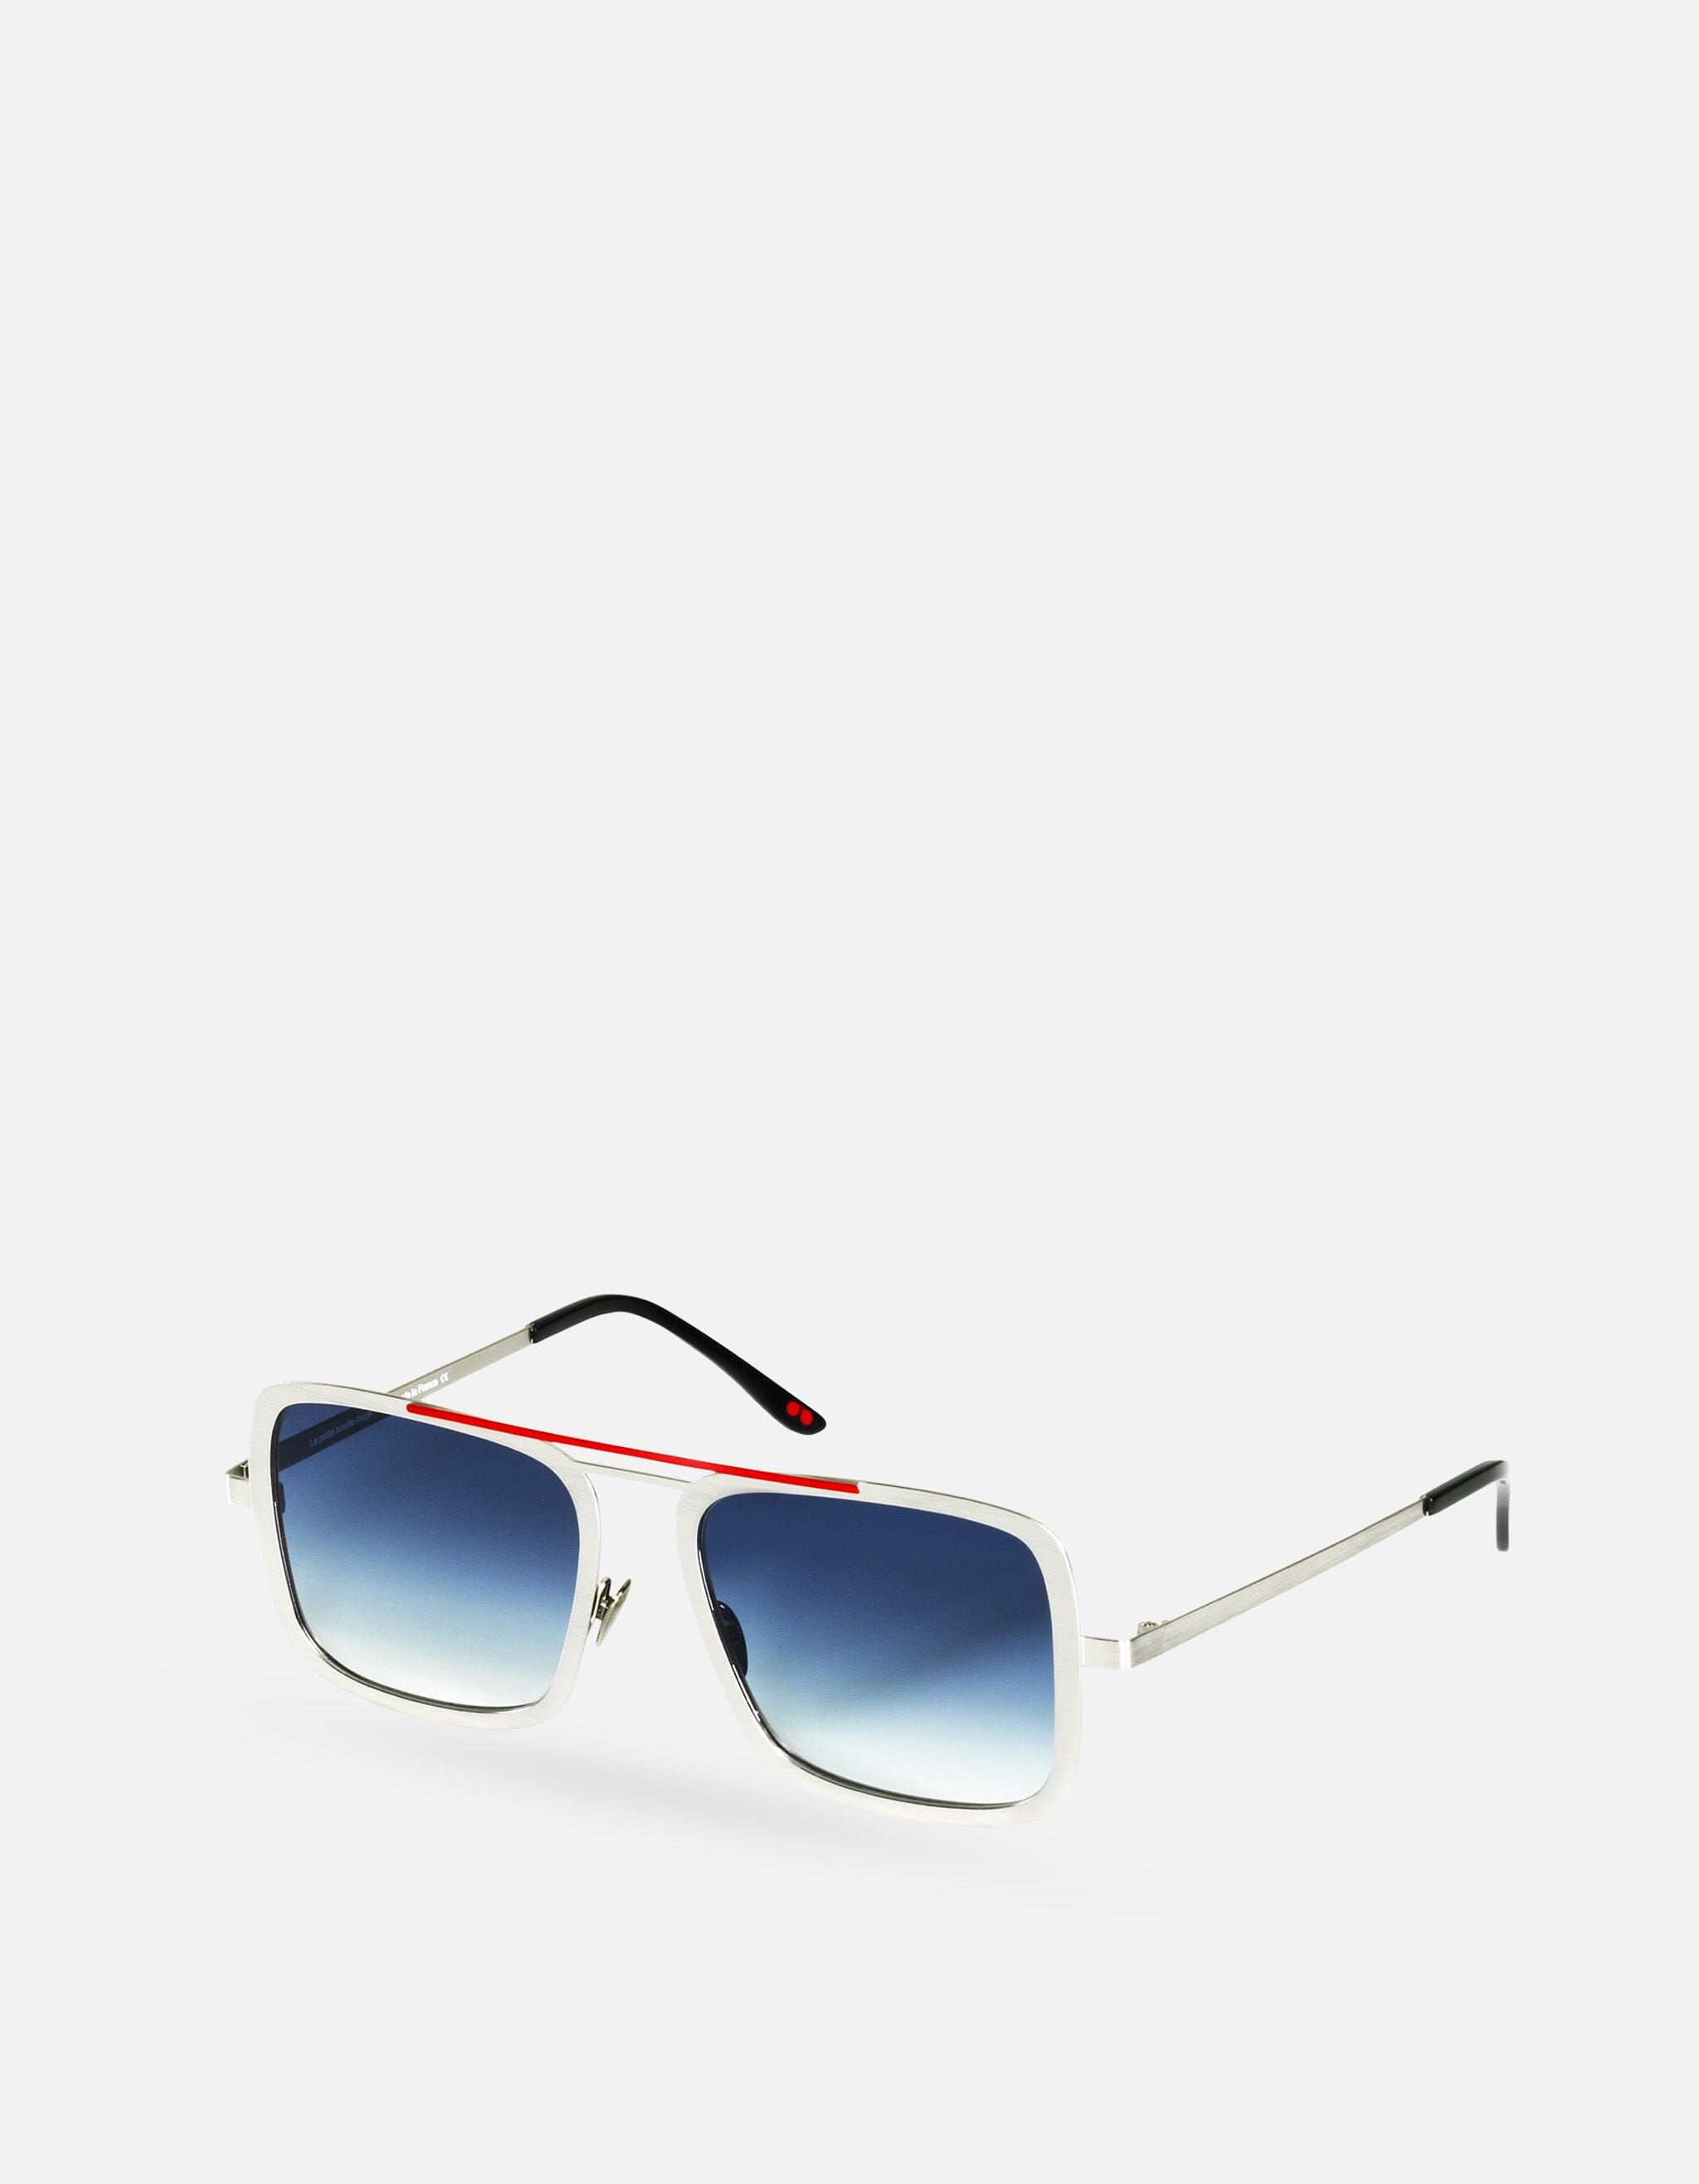 Trish - Palladium Argent Sunglasses - La petite lunette rouge MACKEENE 